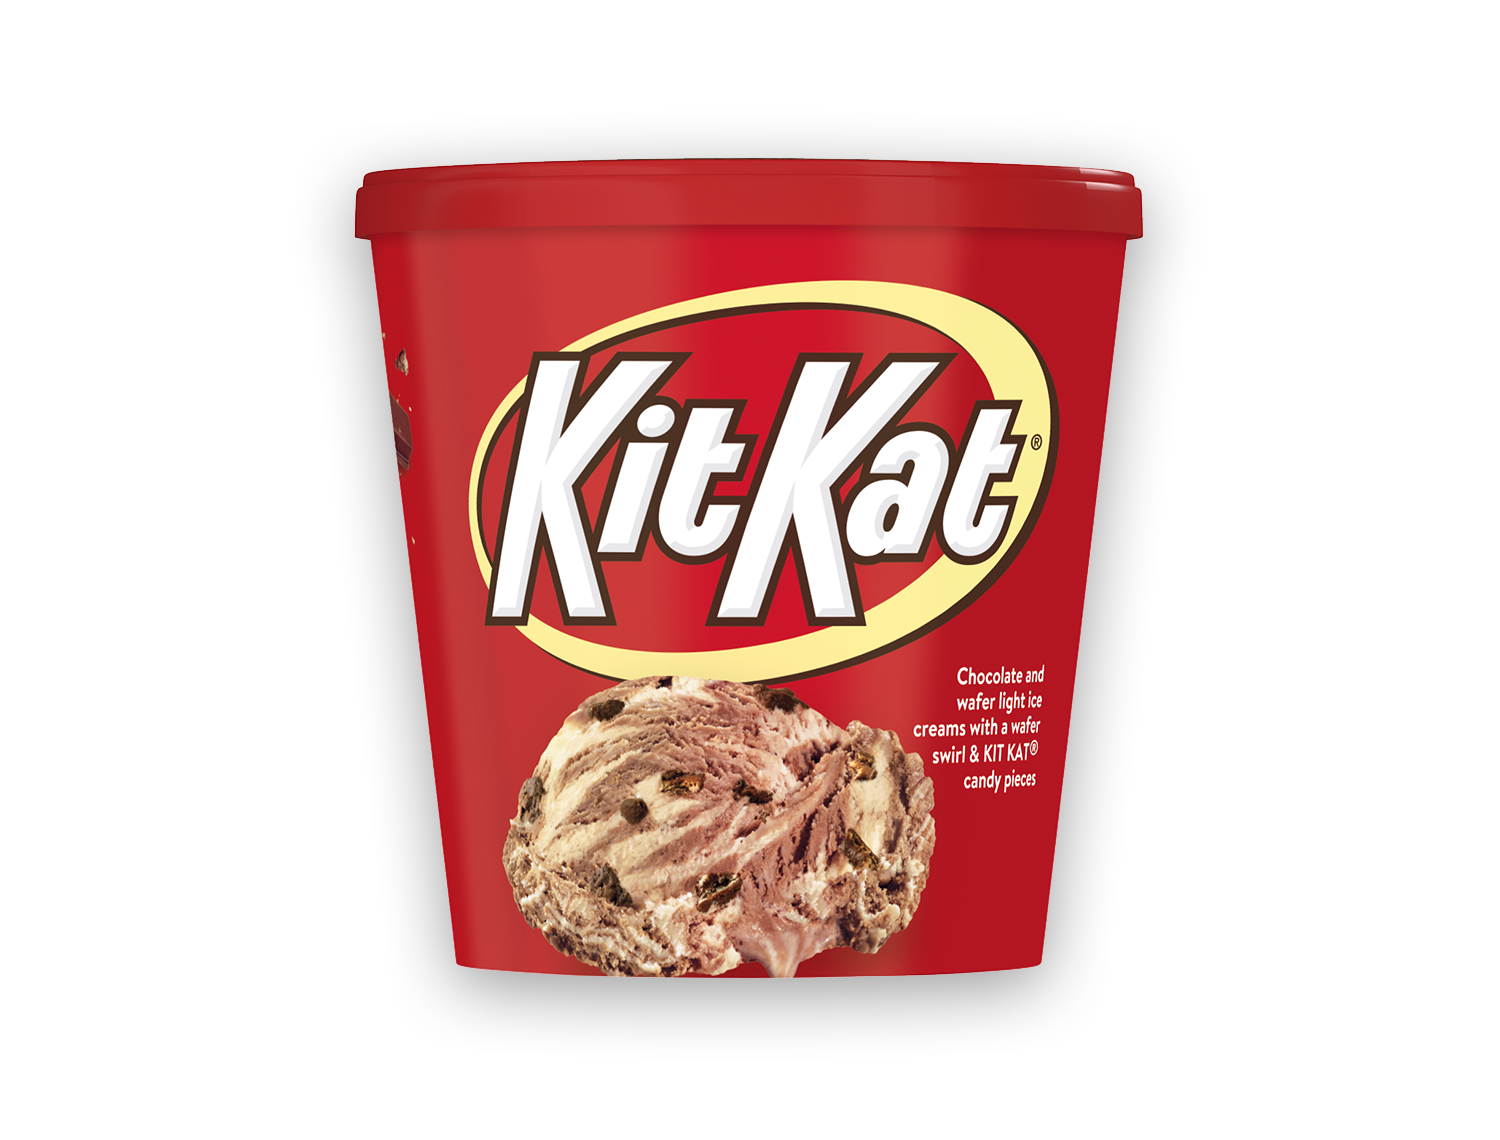 Carton of Kit Kat ice cream